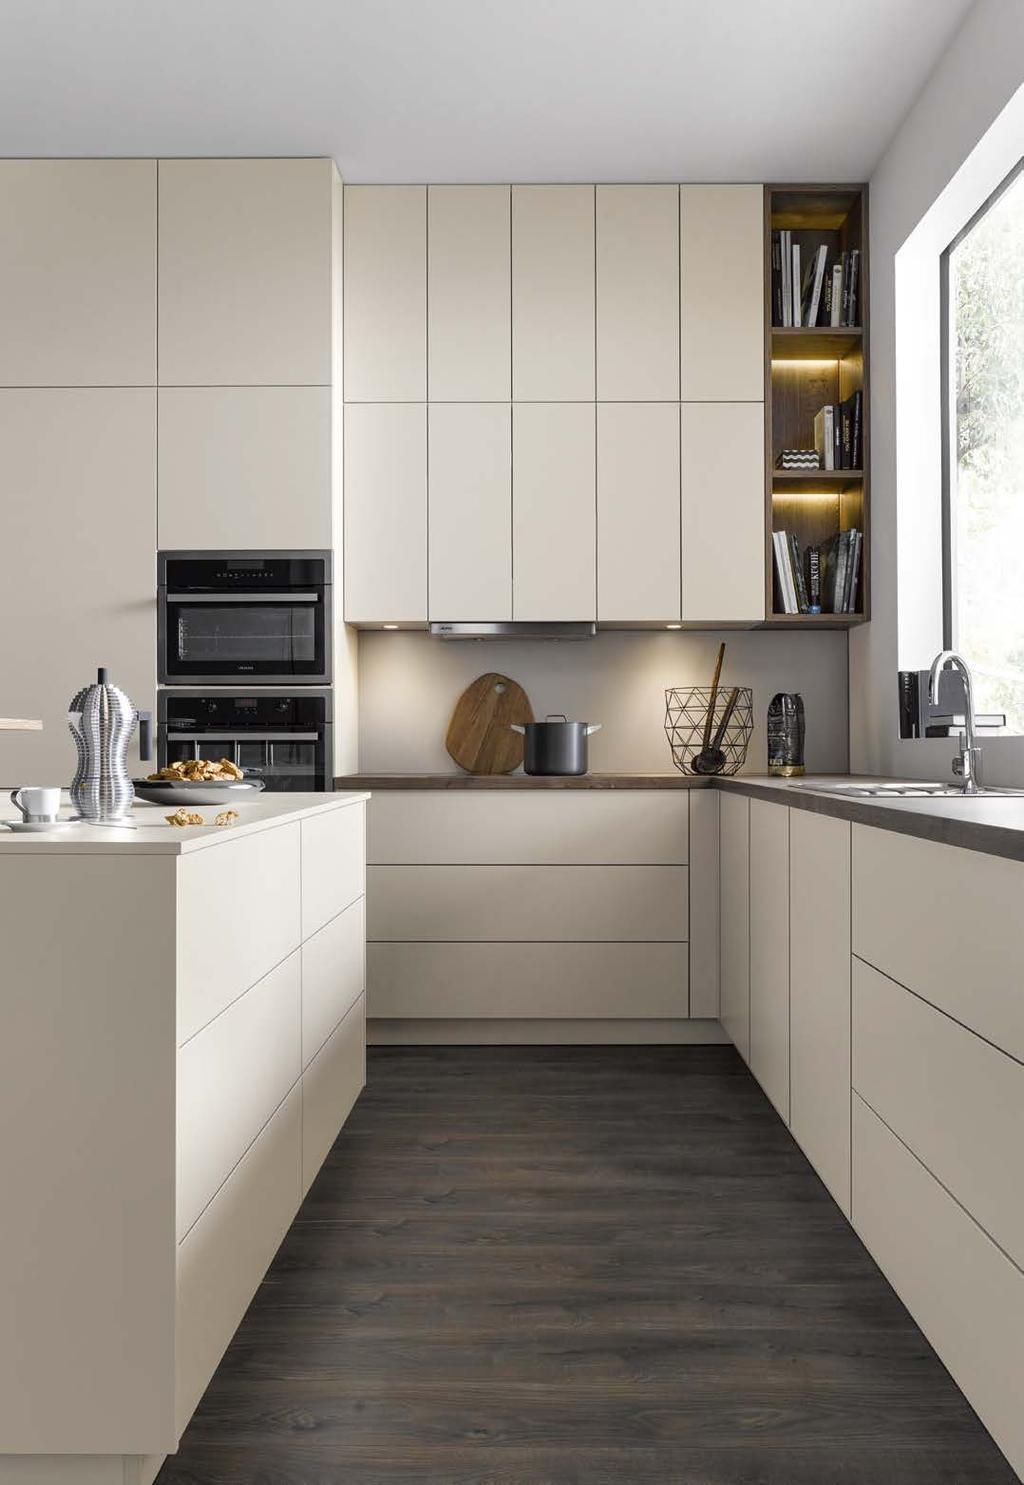 HIER FOLGT DIE FORM DER FUNKTION Die bewusste Architektur der Küche, mit einer extremen horizontalen und vertikalen Linienführung, prägt den Raum.